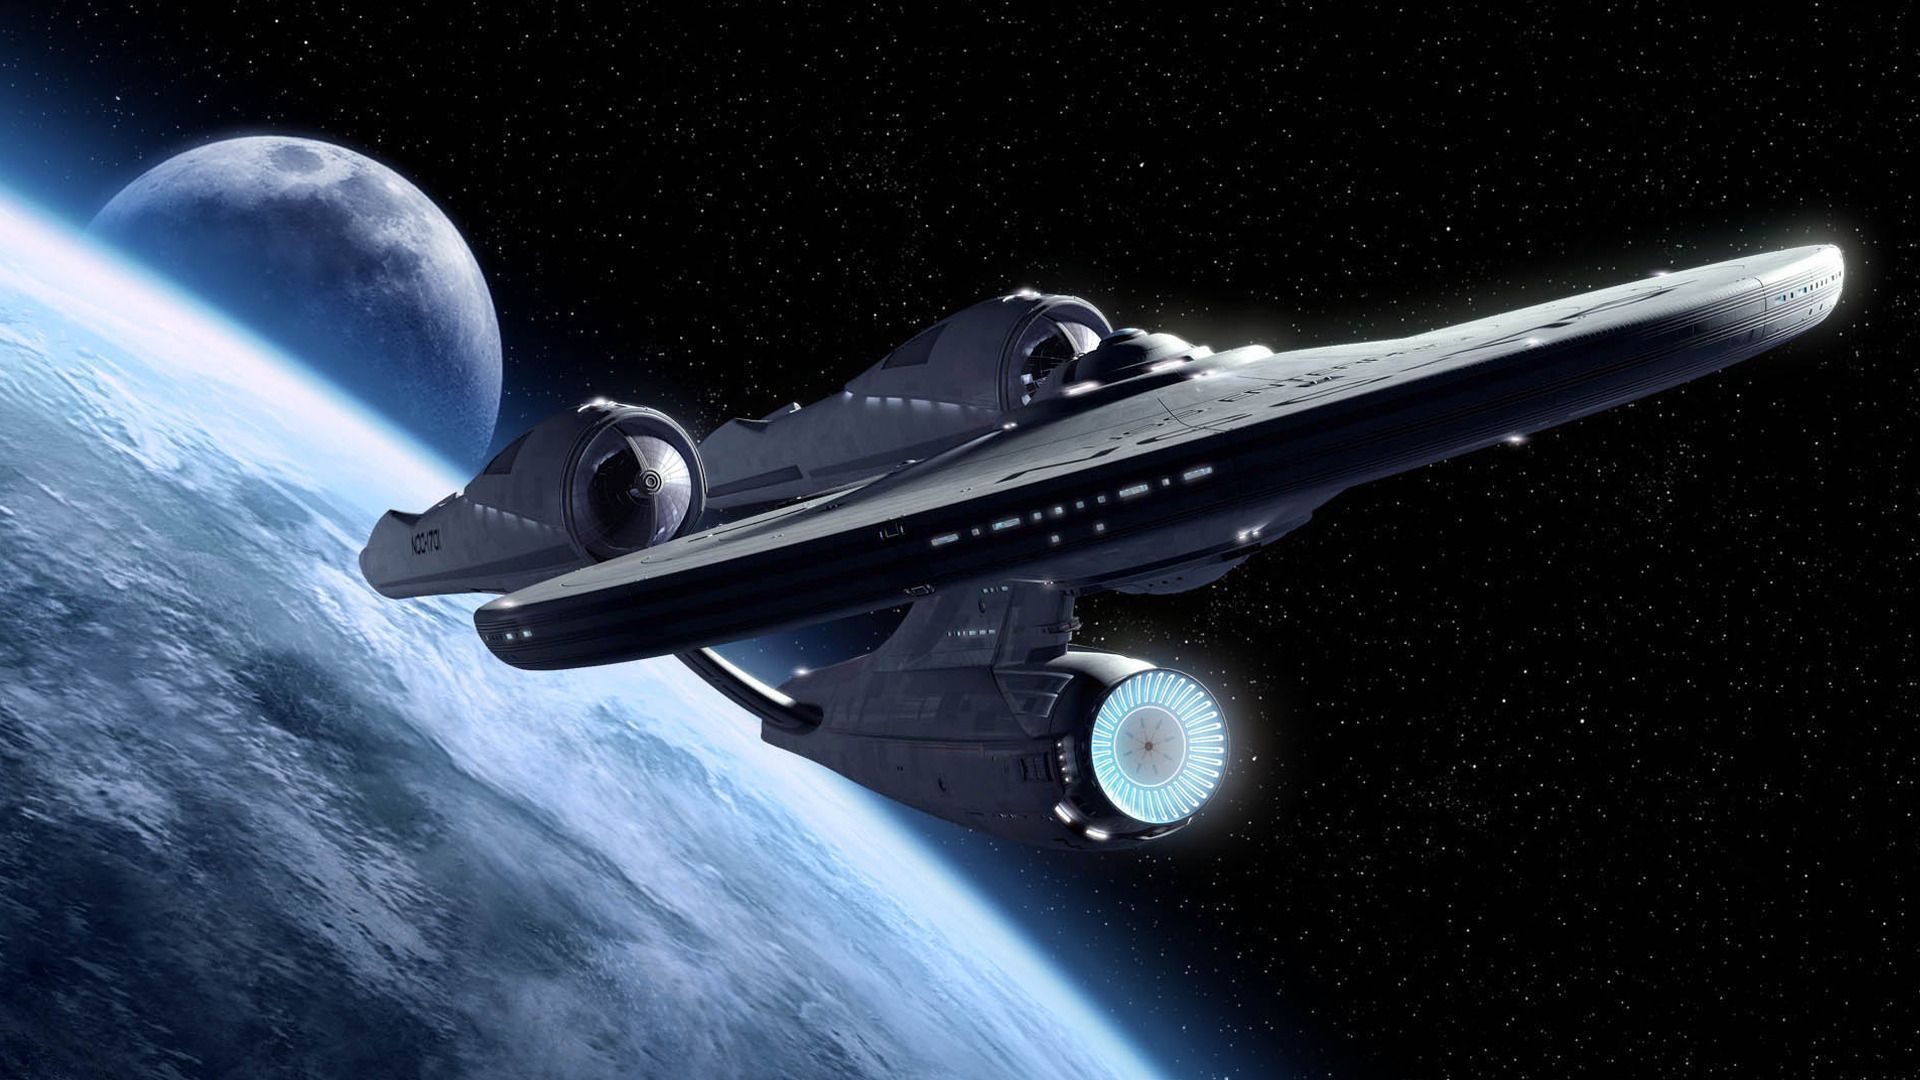 Starship Enterprise Trek wallpaper. Star trek movies, Star trek, Star trek 2009